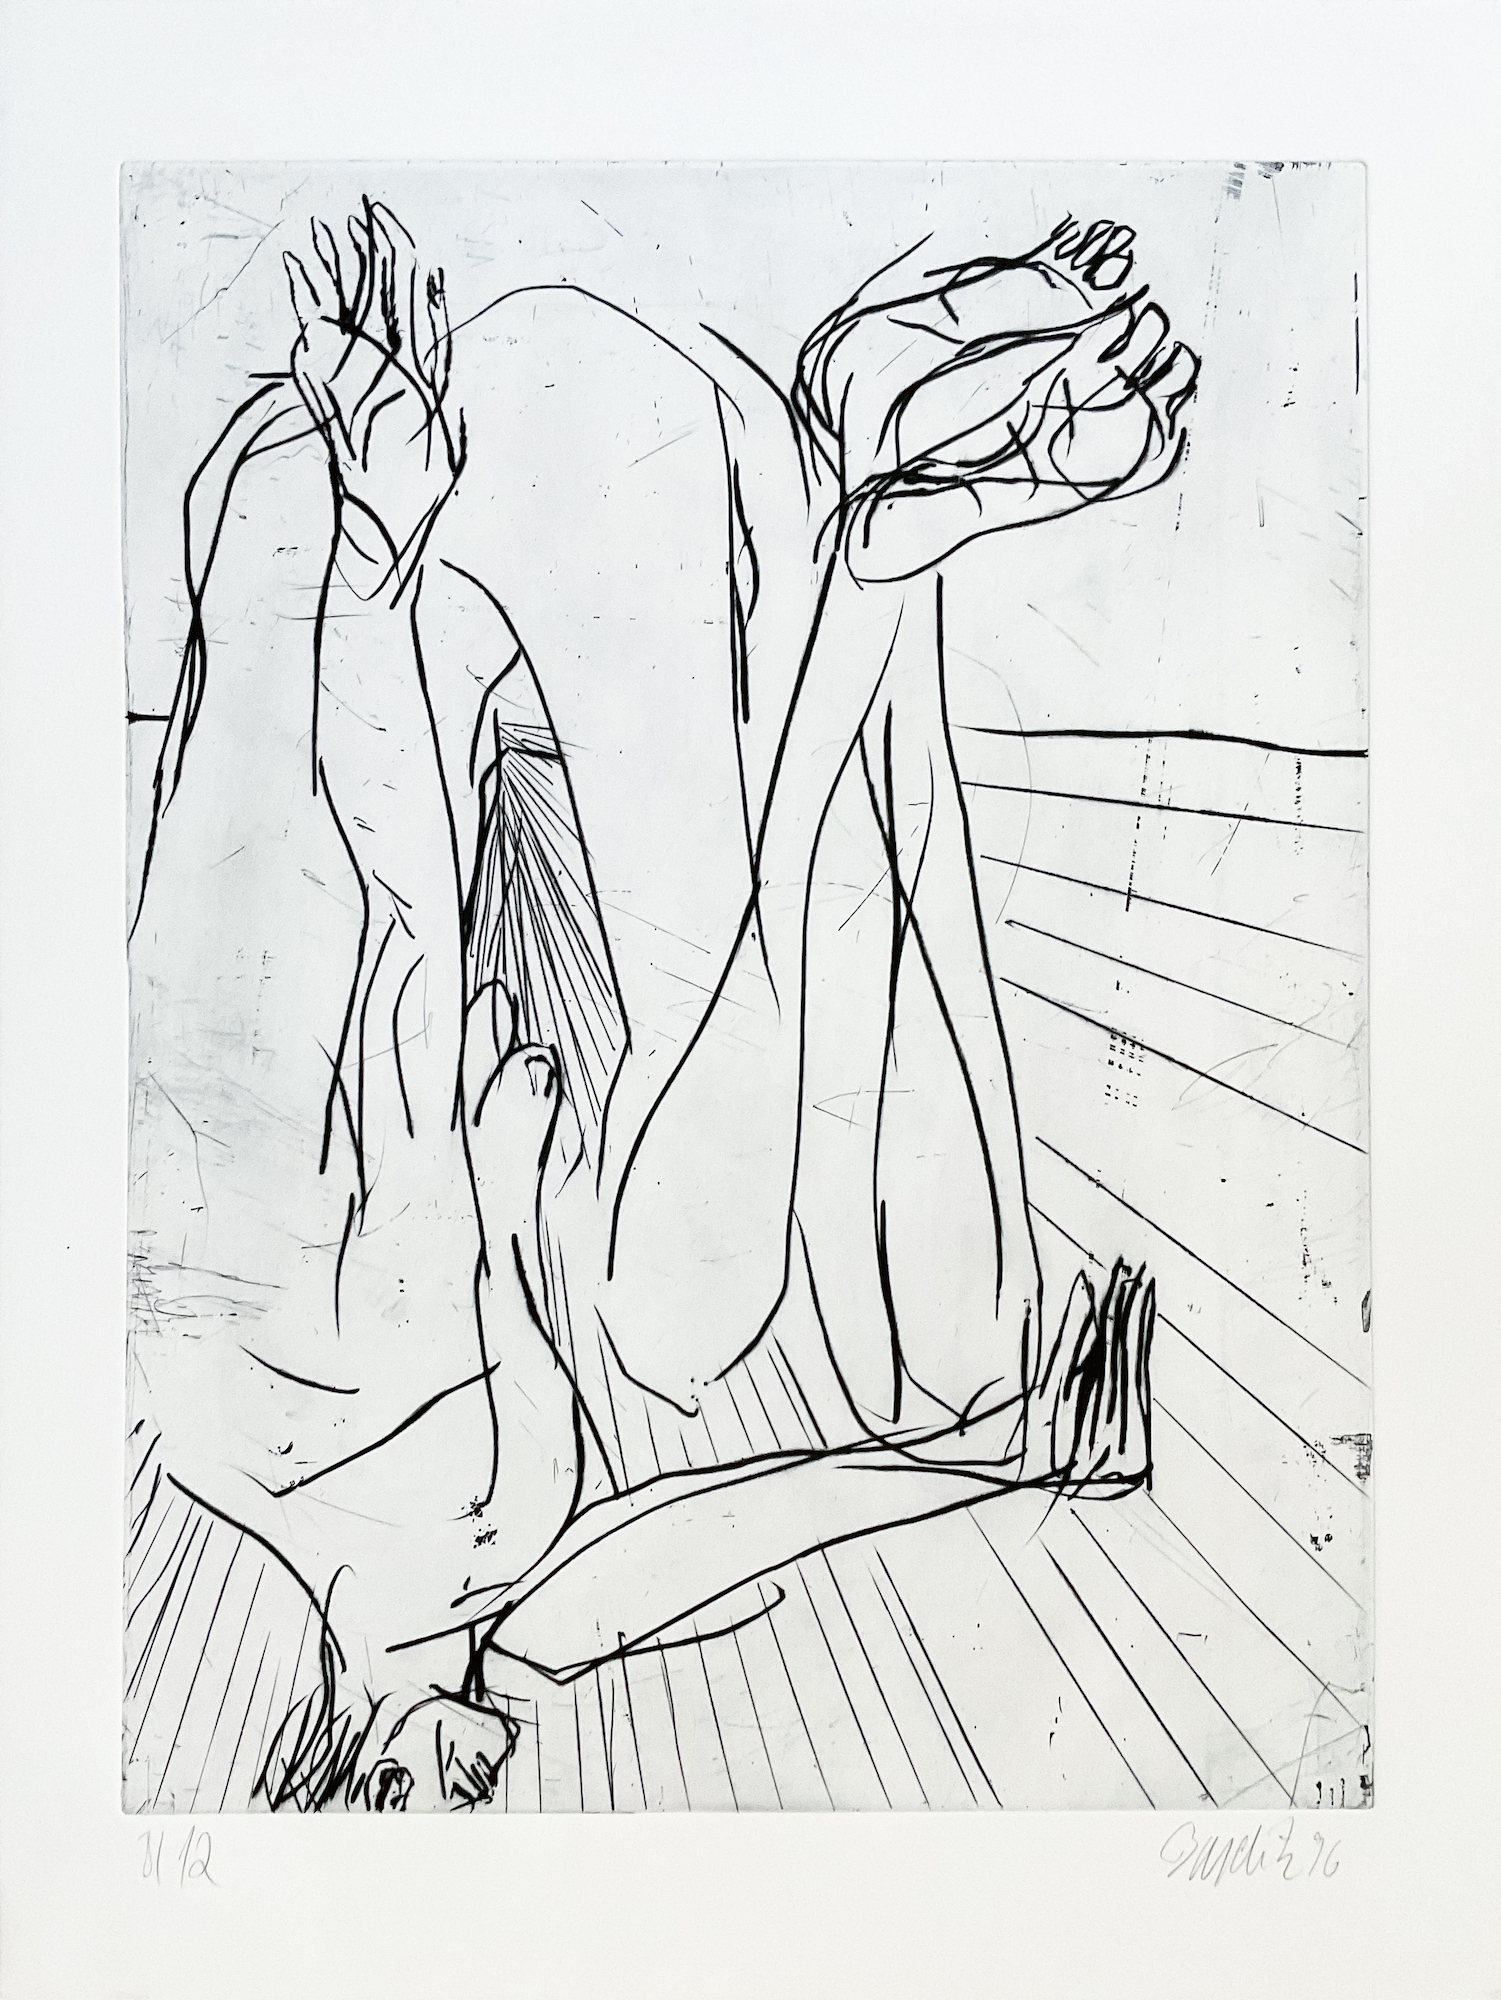 Georg Baselitz, Goldener Schnitt, Kaltnadelradierung, Auflage 12, 60 x 80 cm, 5.200 eur